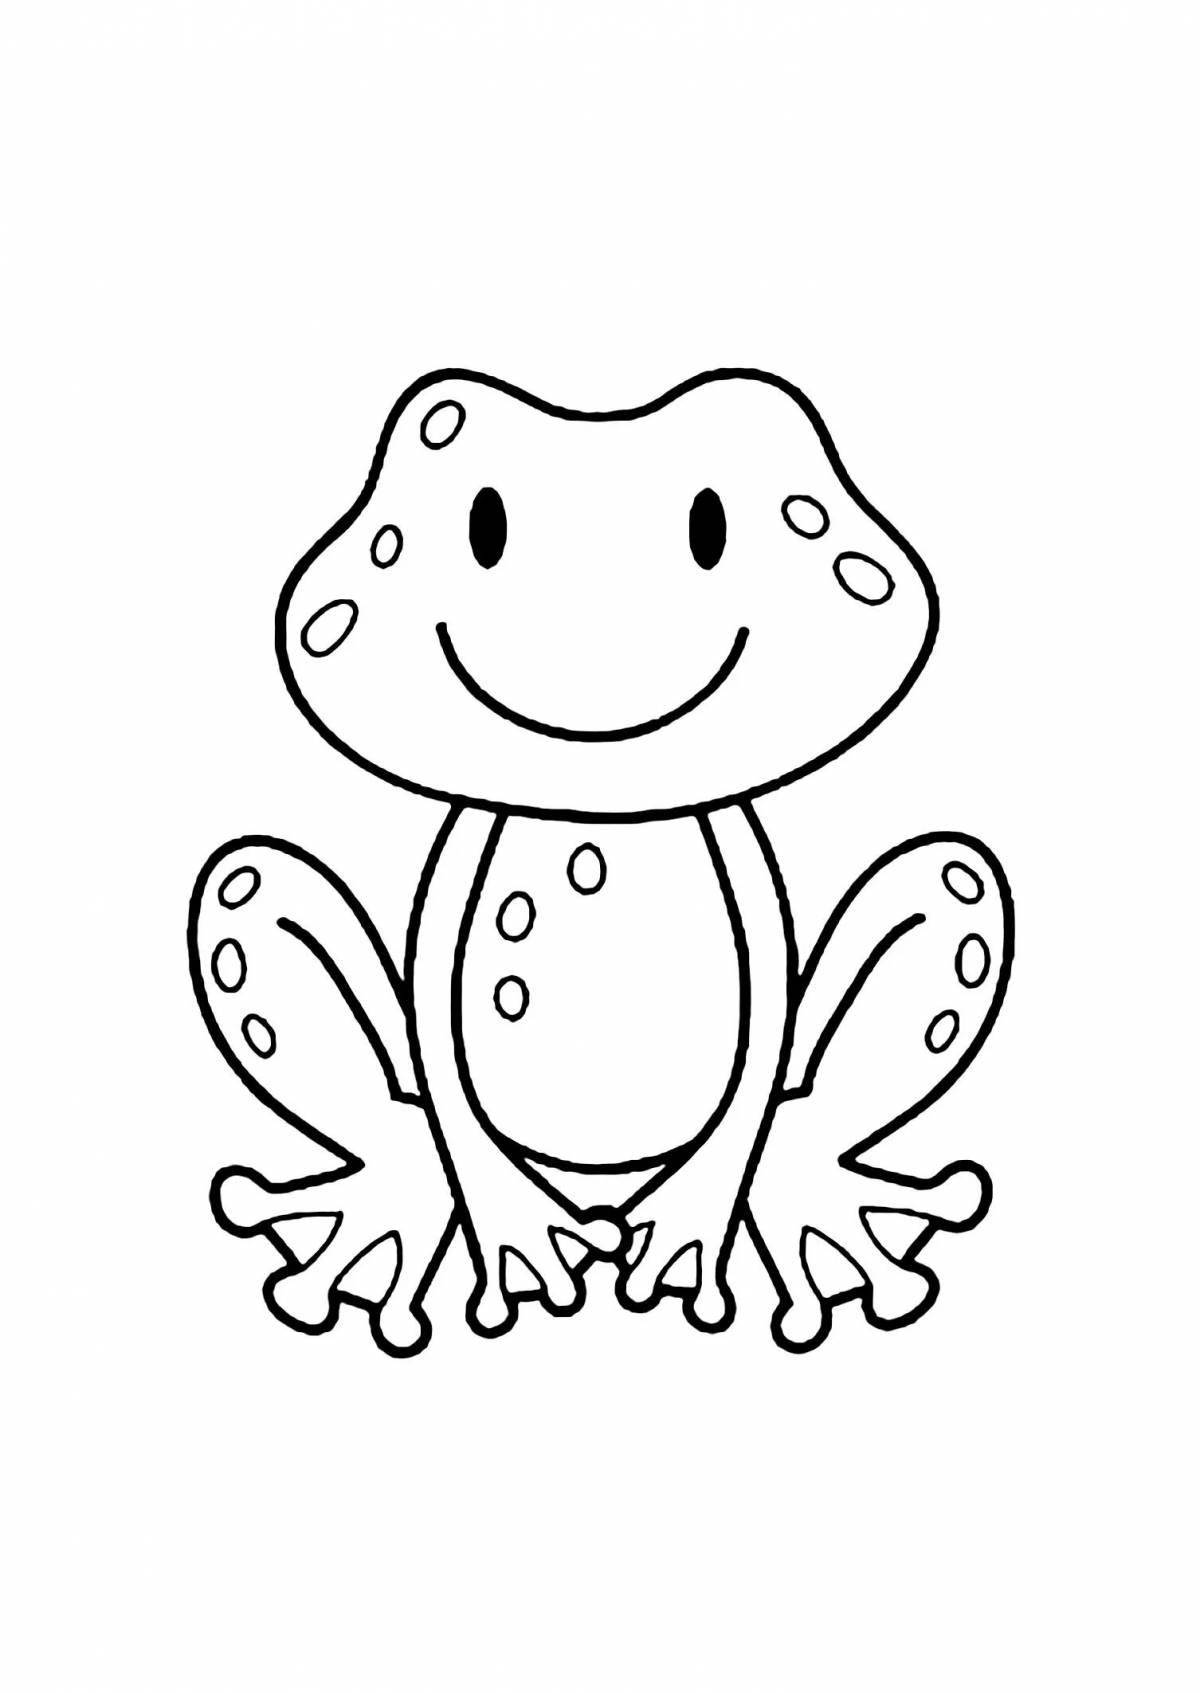 Игривый рисунок лягушки для детей